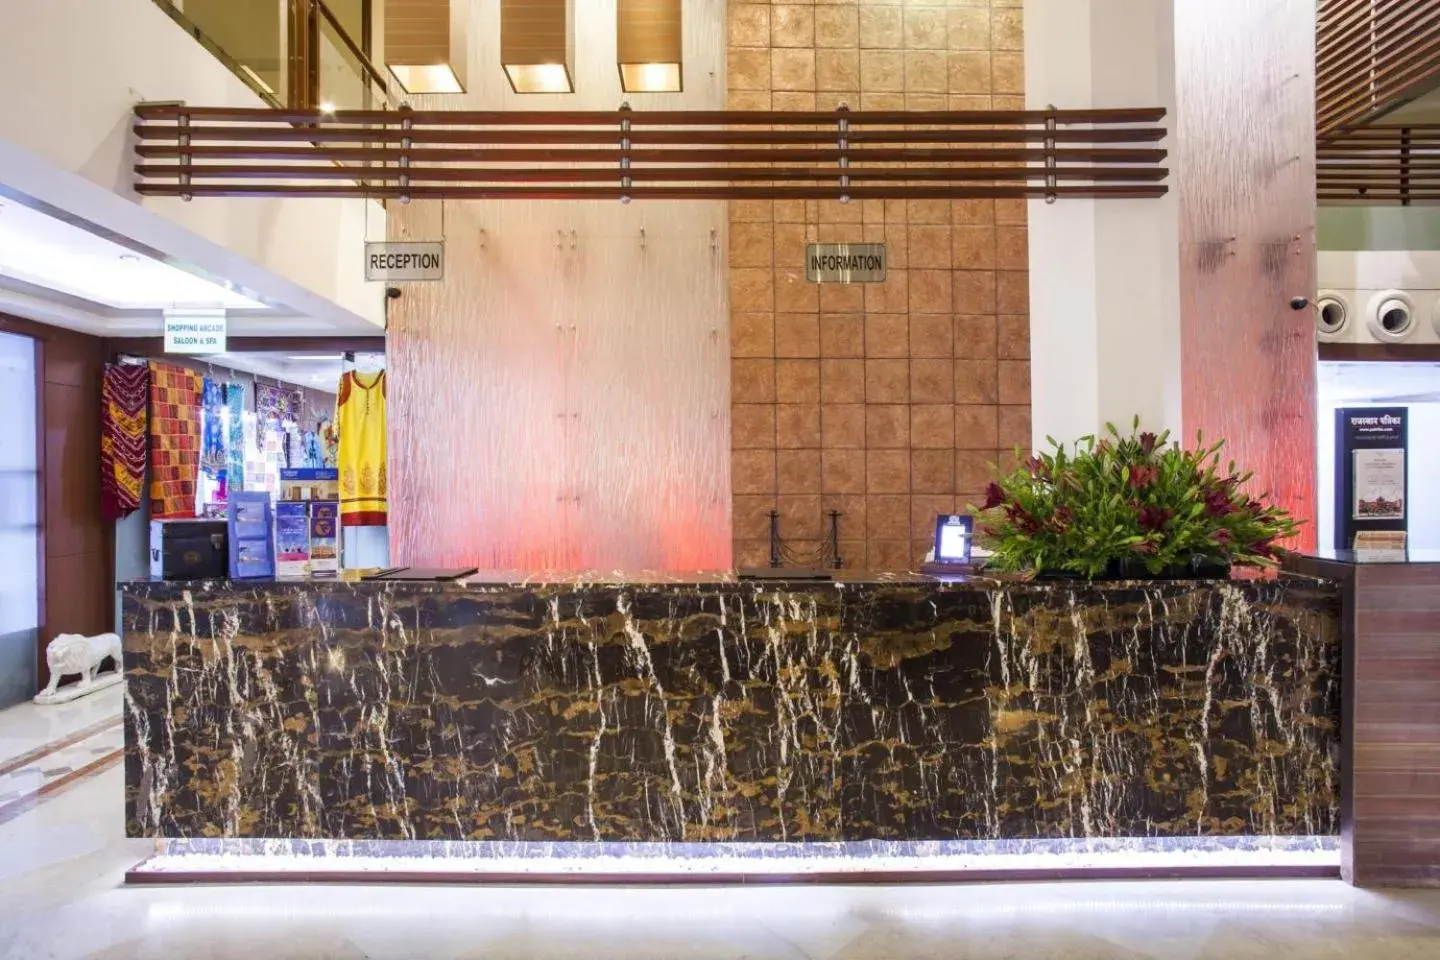 Lobby or reception in Clarion Hotel Bella Casa